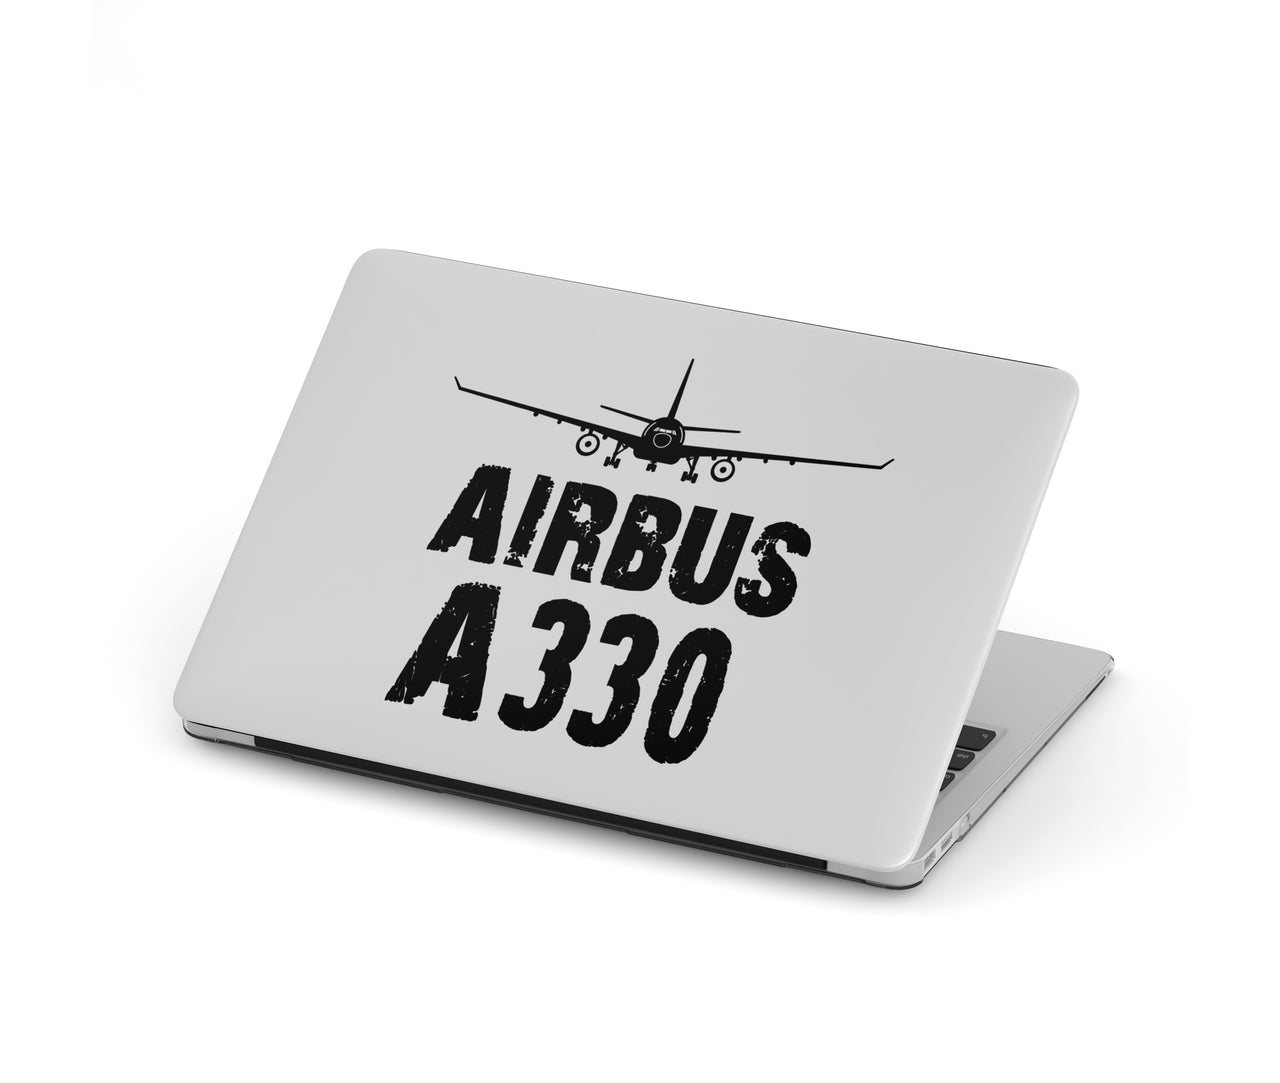 Airbus A330 & Plane Designed Macbook Cases